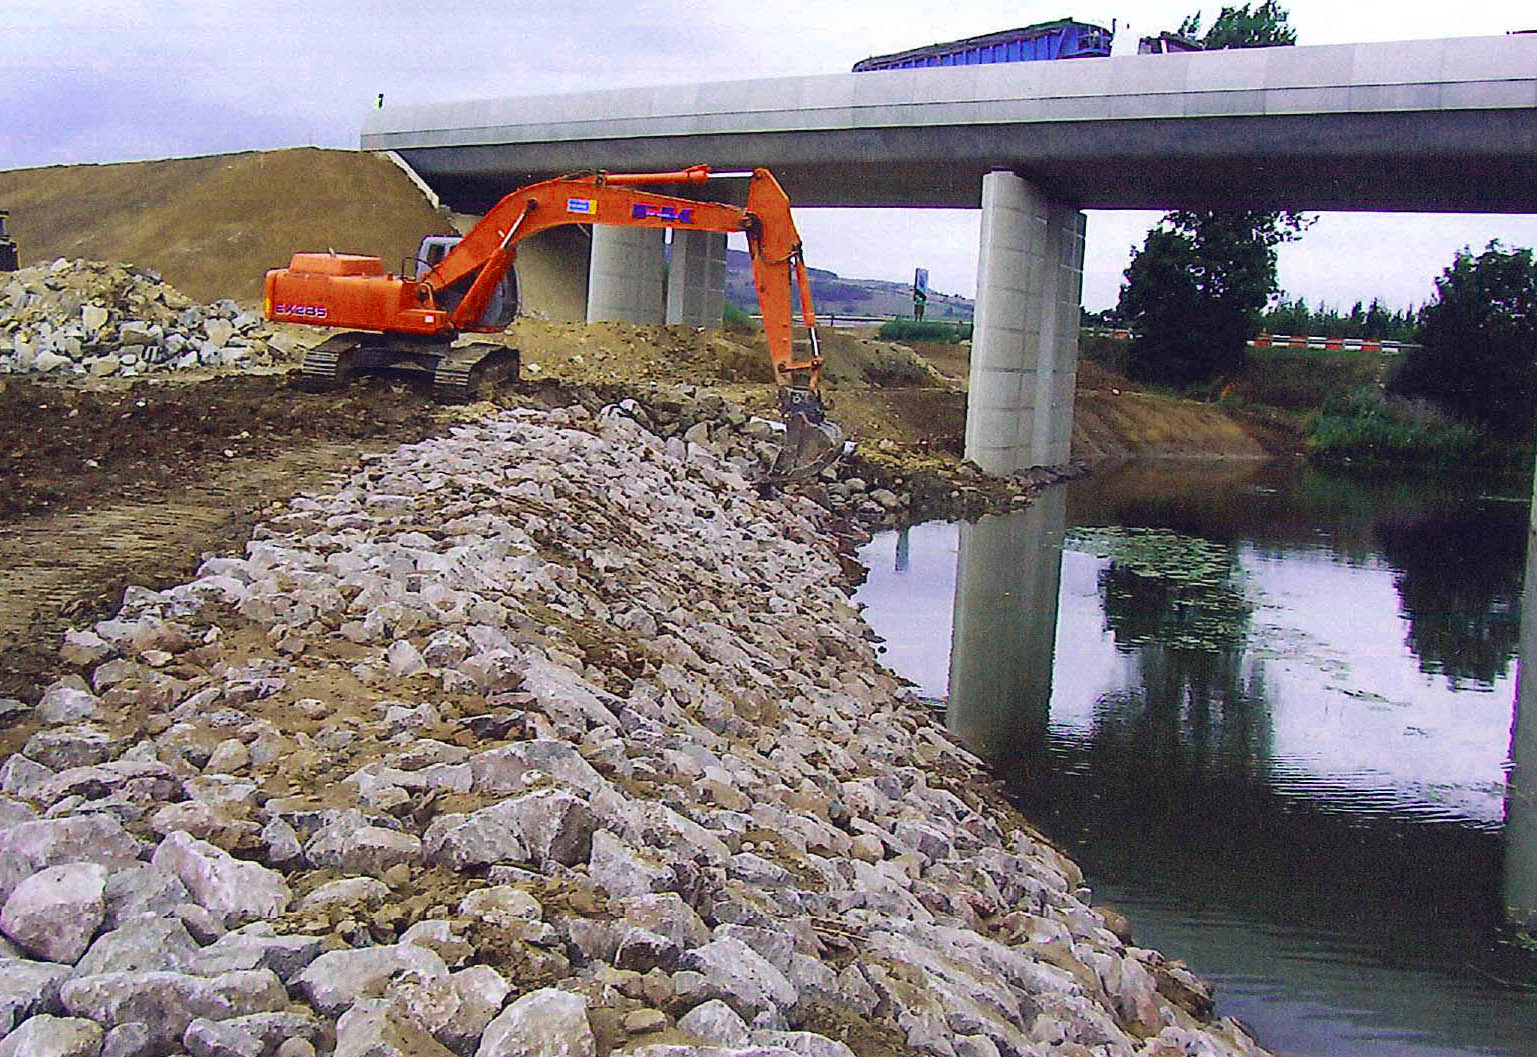 Rétablissement du cours d'eau après la construction de la LGV Est.
Réseau Ferré de France RFF
Pont de la Seille - 2006
